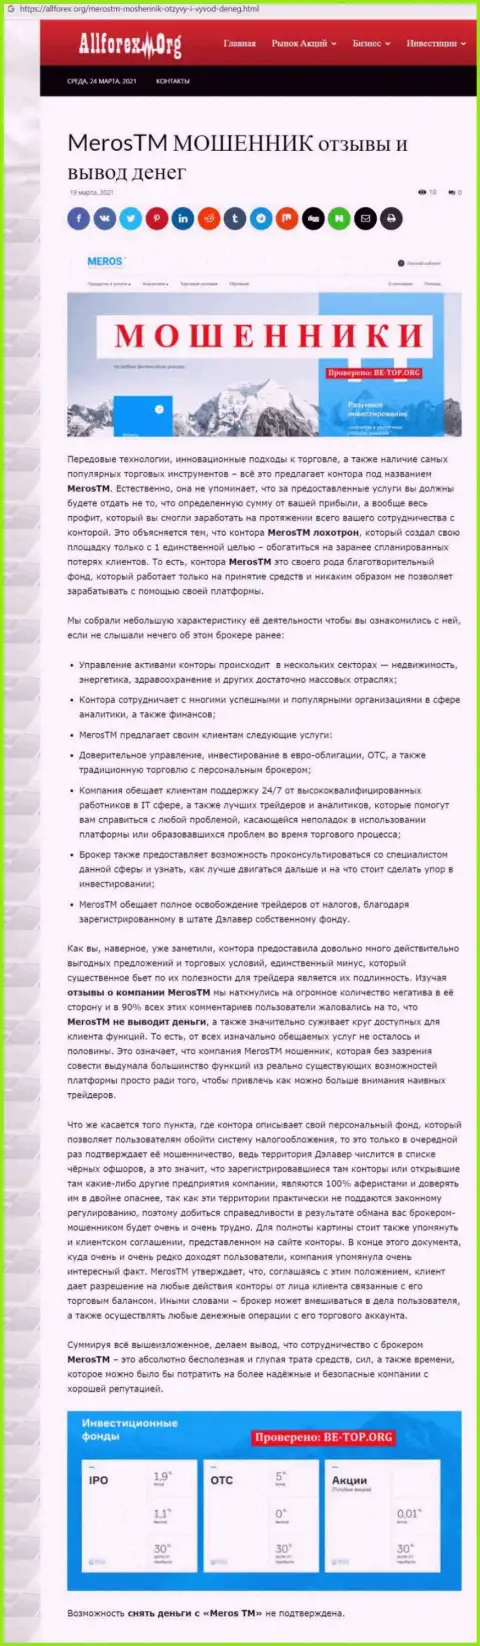 Организация MerosTM Com - это МОШЕННИКИ !!! Обзор с фактами кидалова